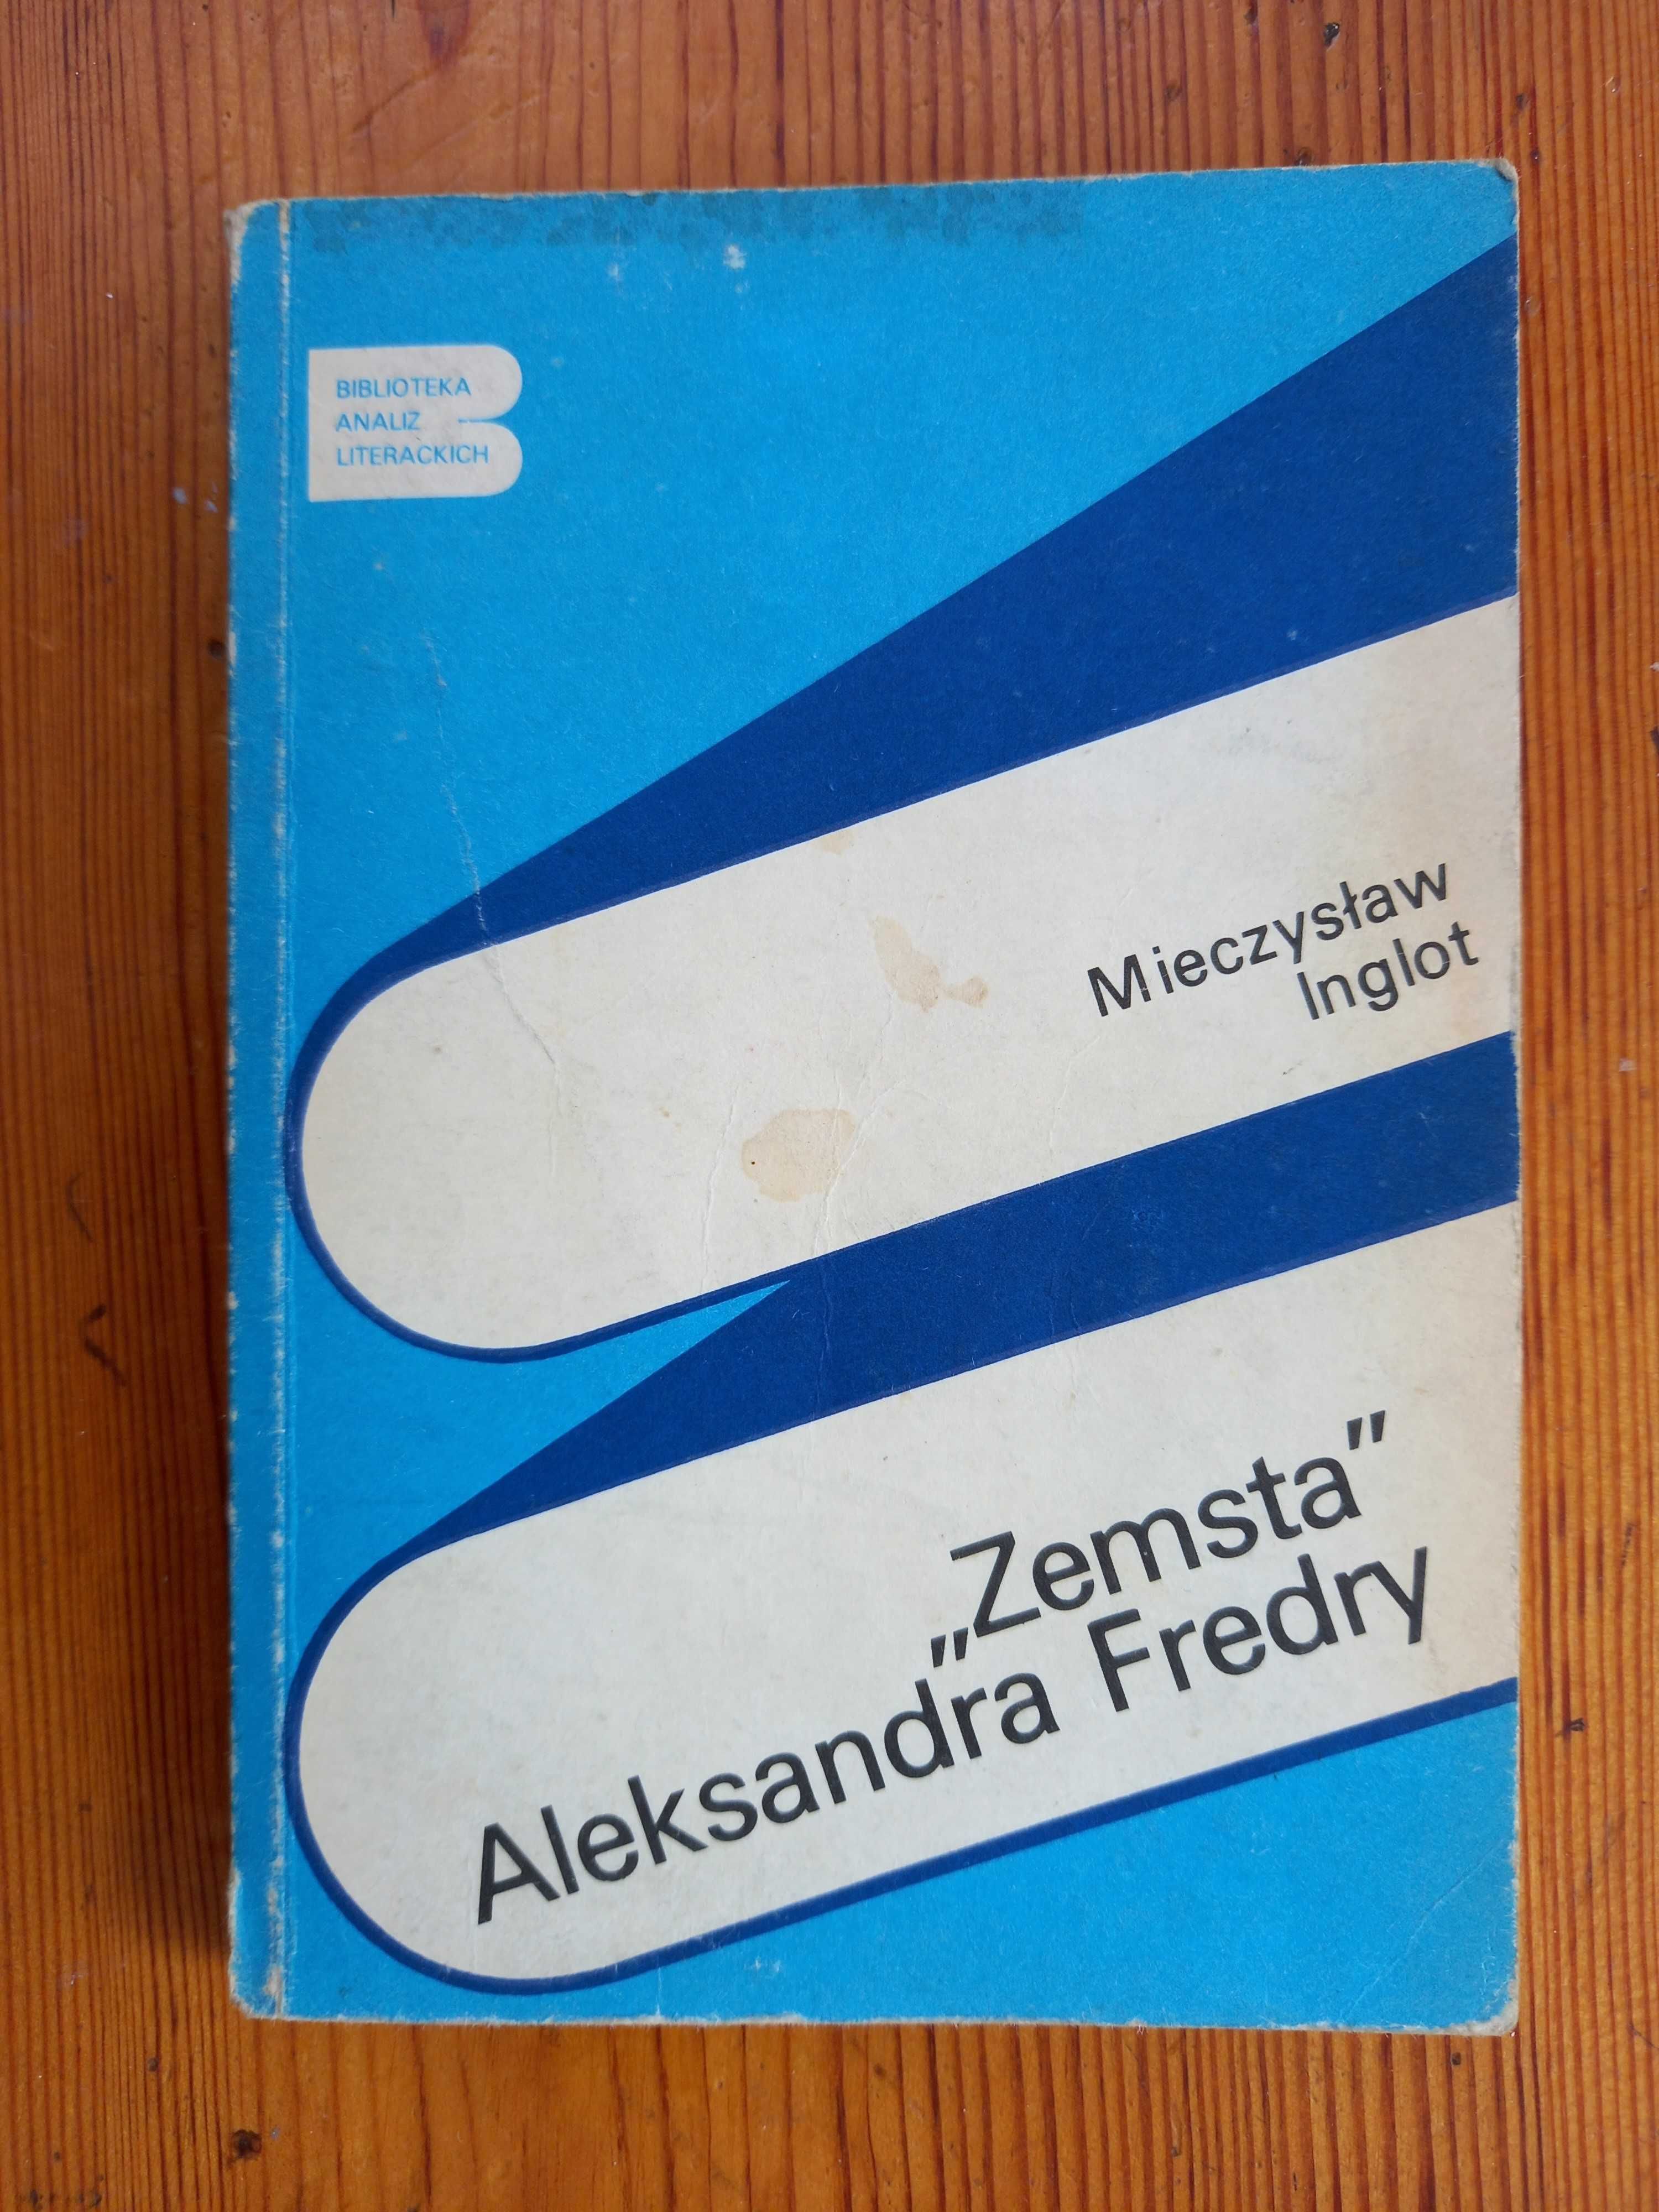 Książka "Zemsta Aleksandra Fredry"